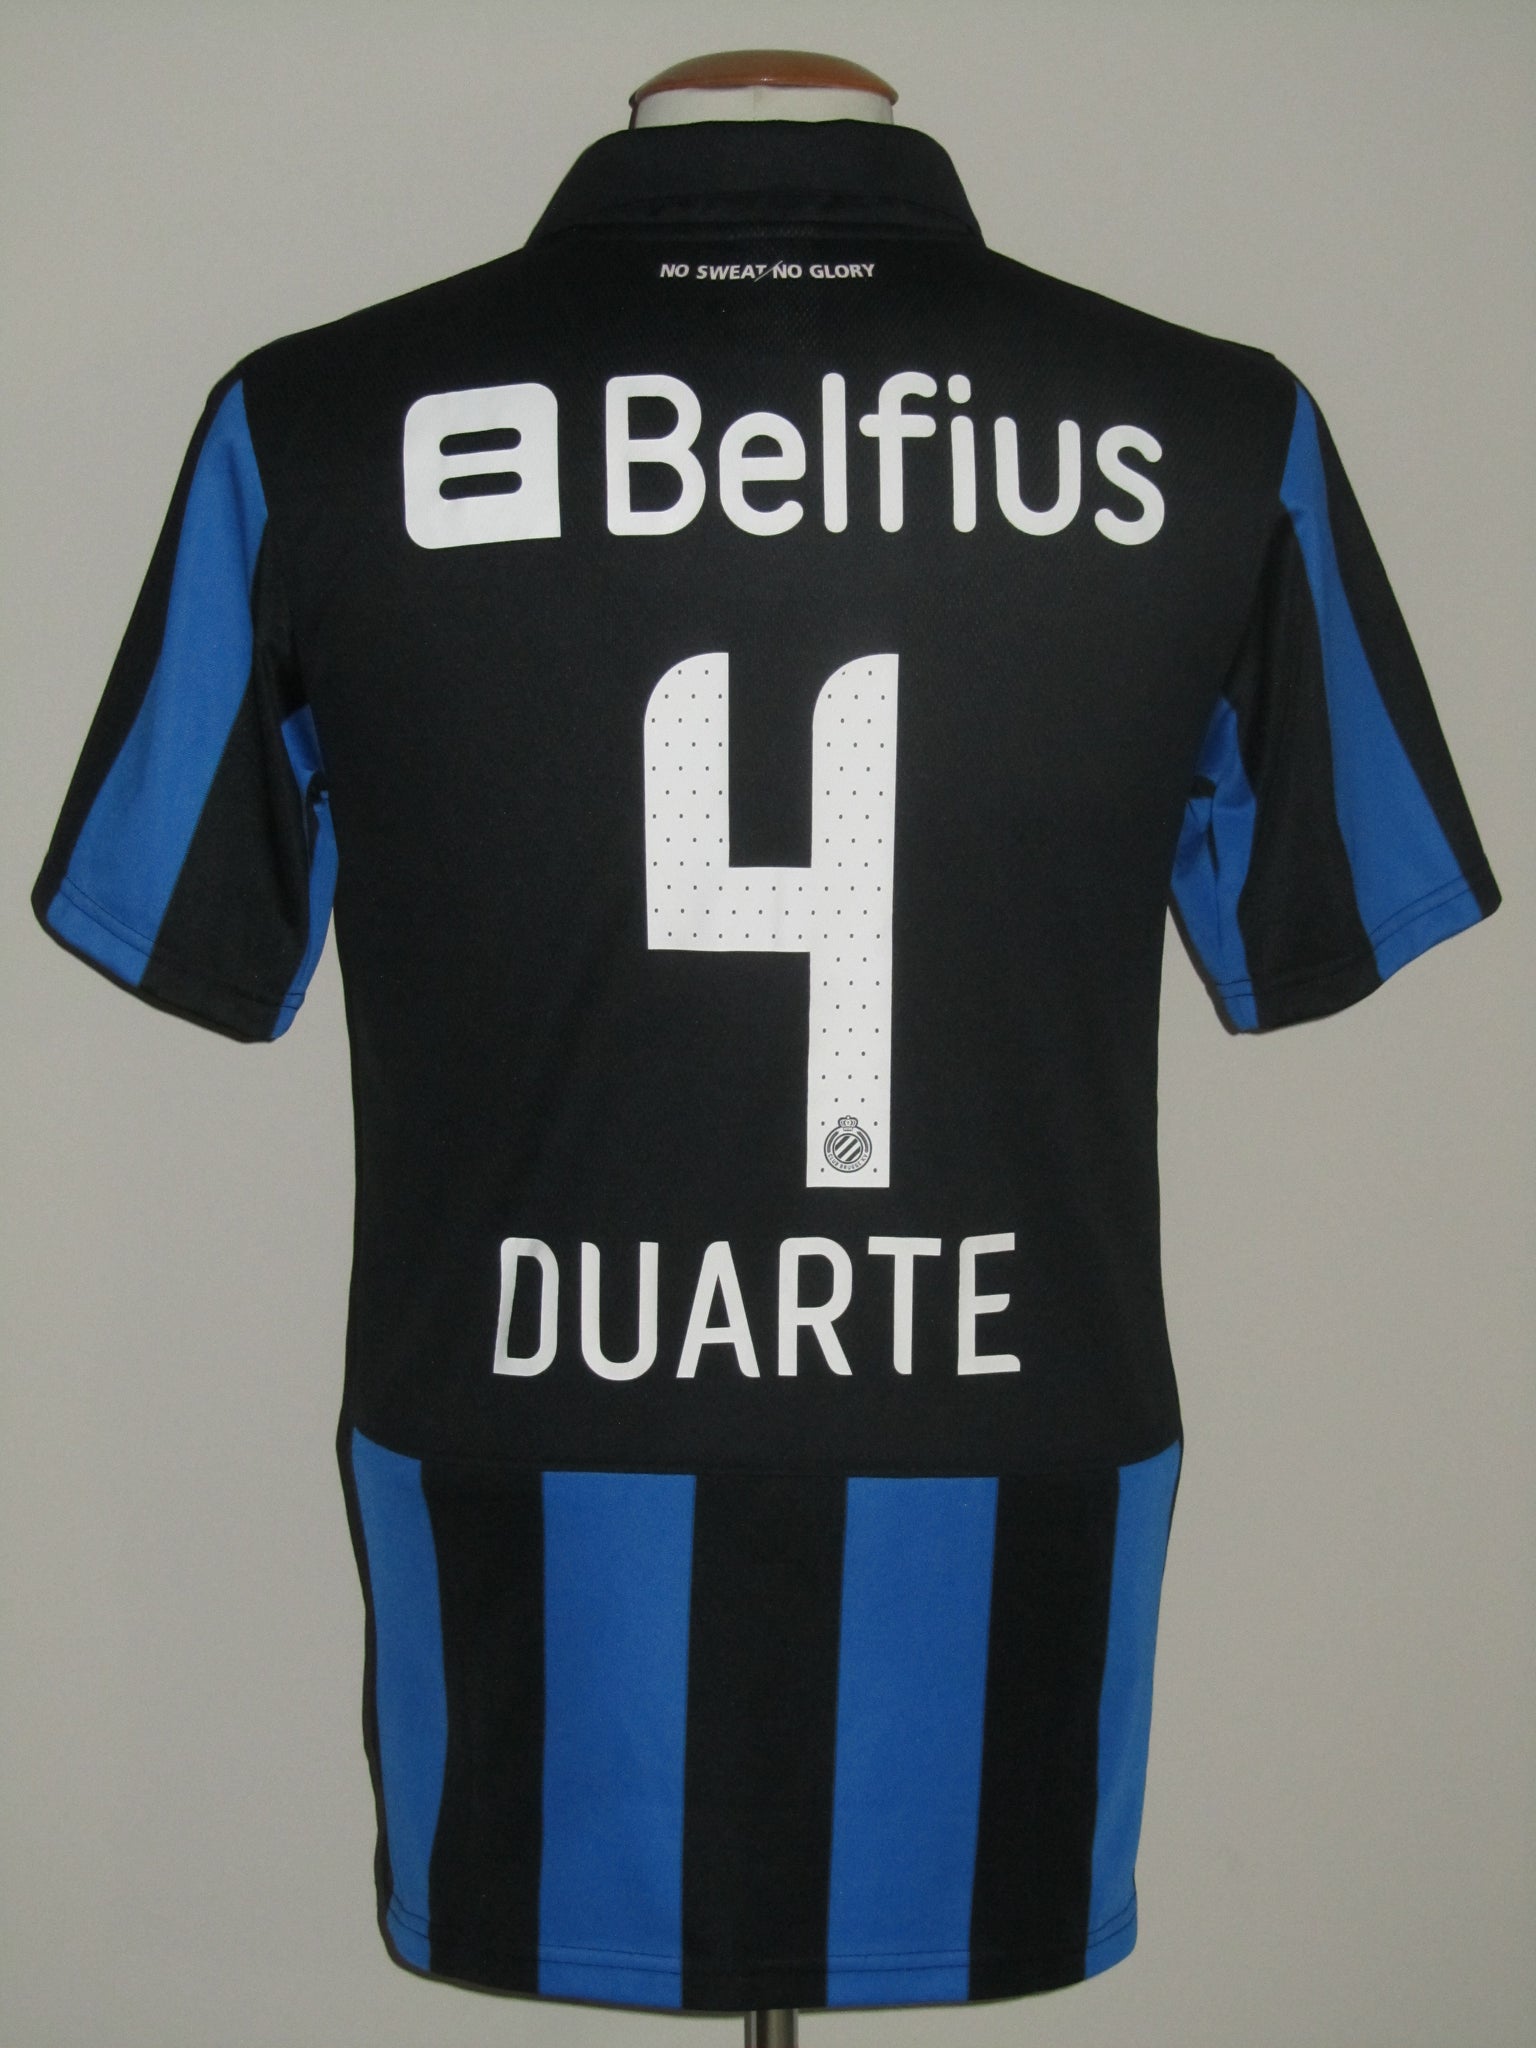 Anderlecht - Club Brugge 30-11-2014, Oscar Duarte of Club B…